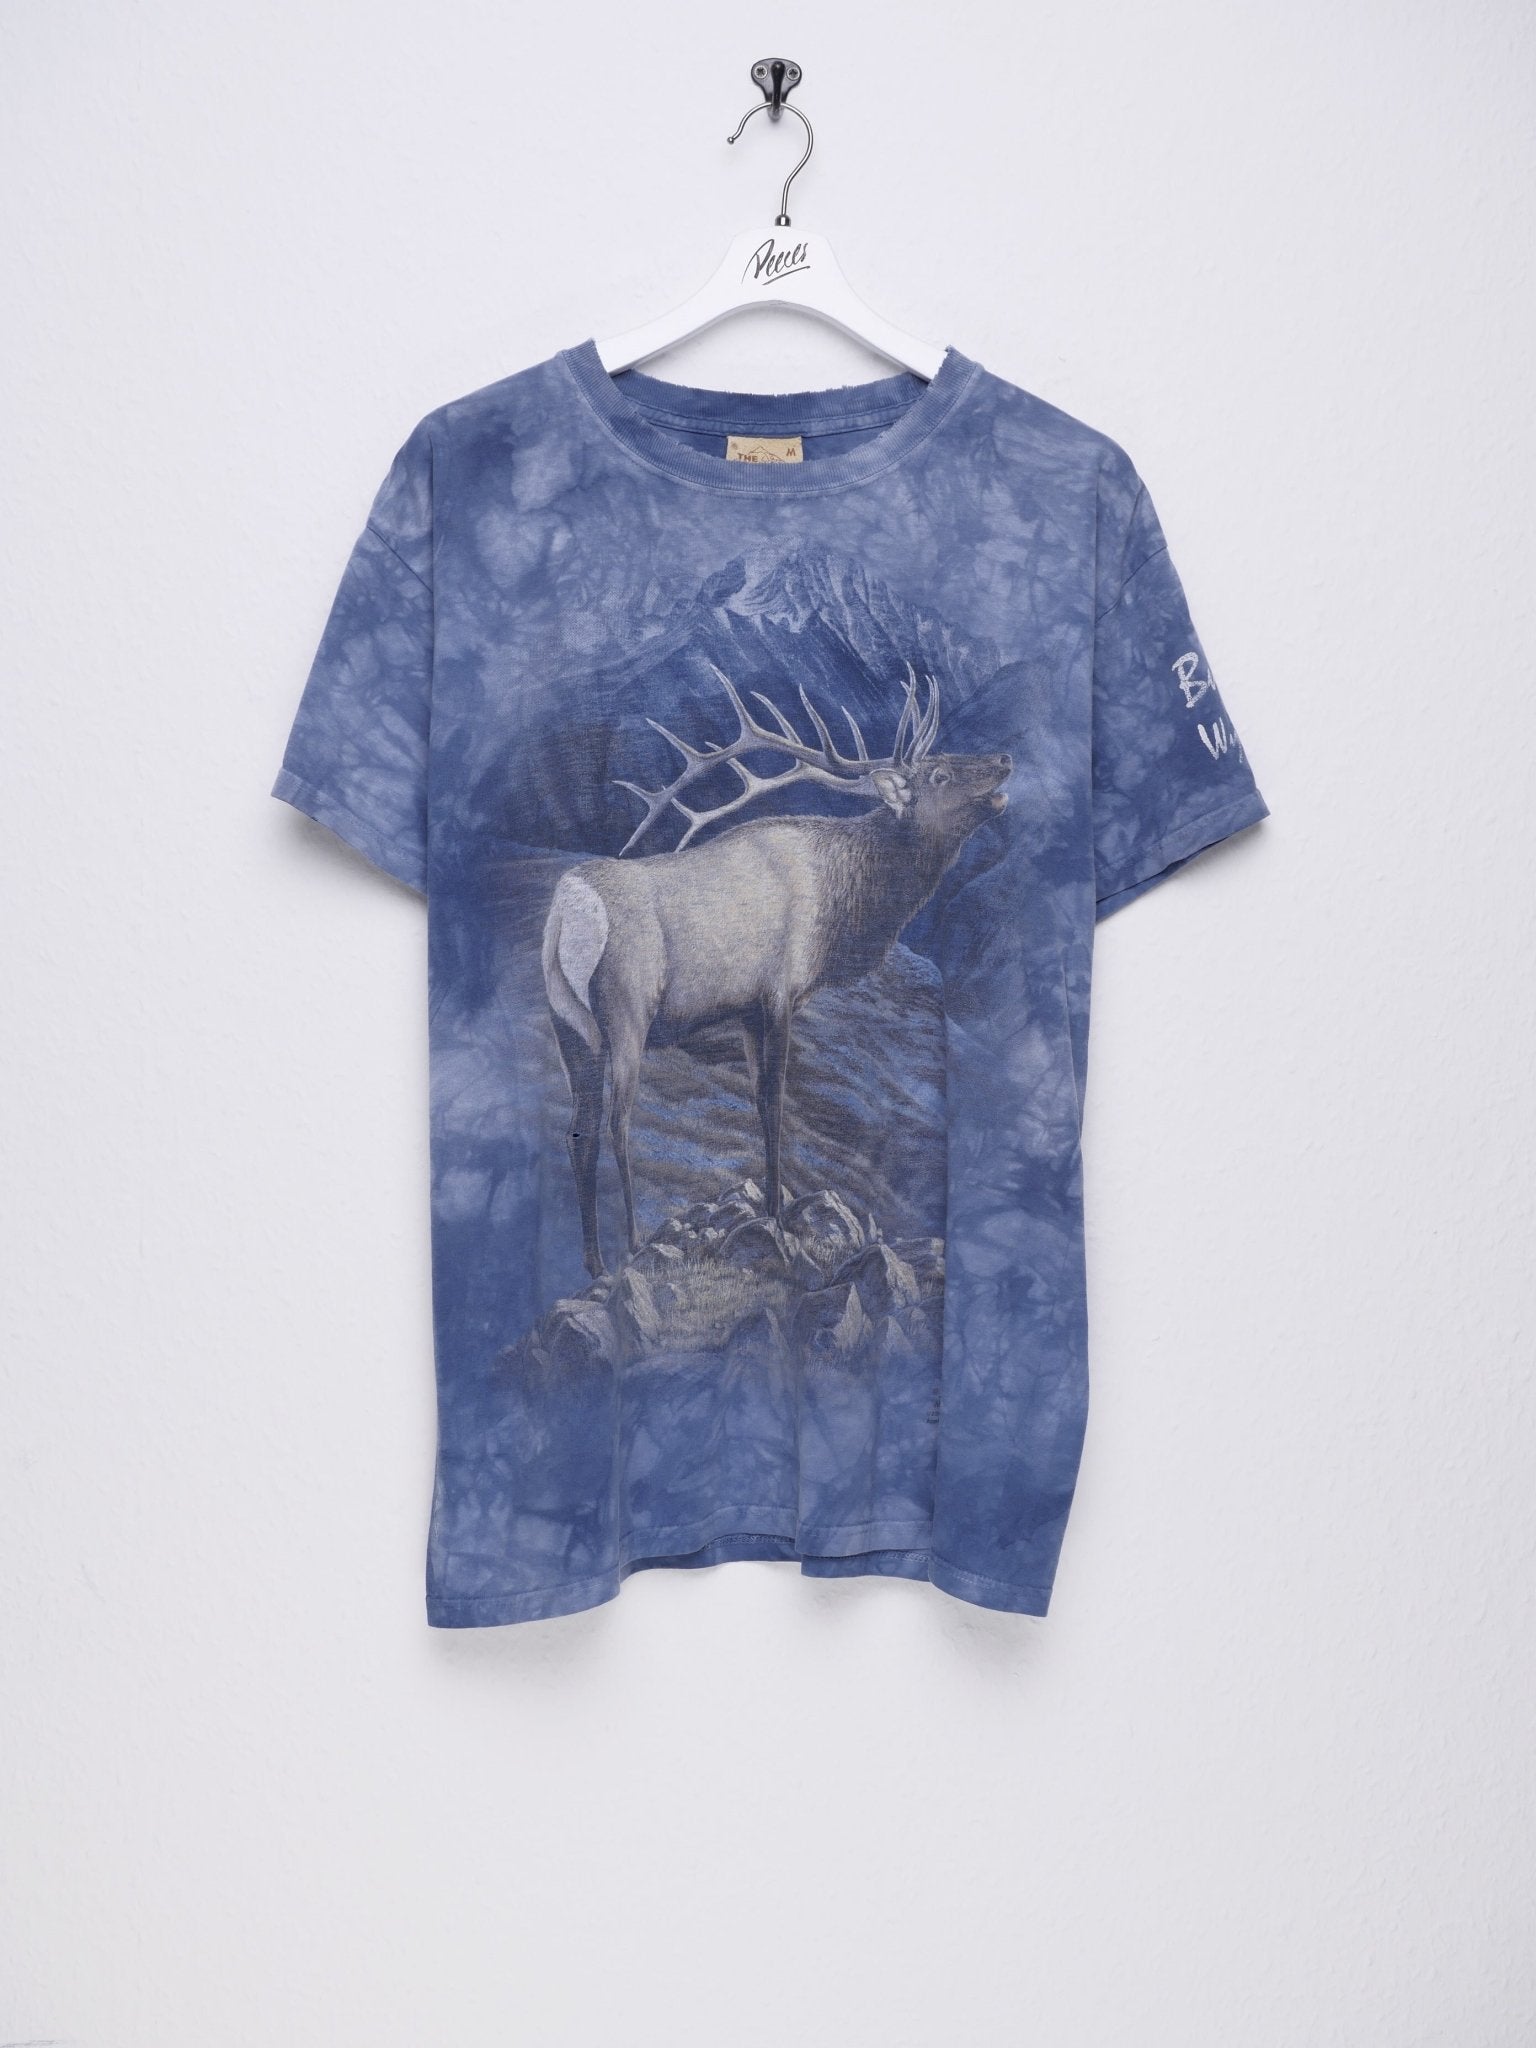 Deer printed Graphic Vintage Shirt - Peeces